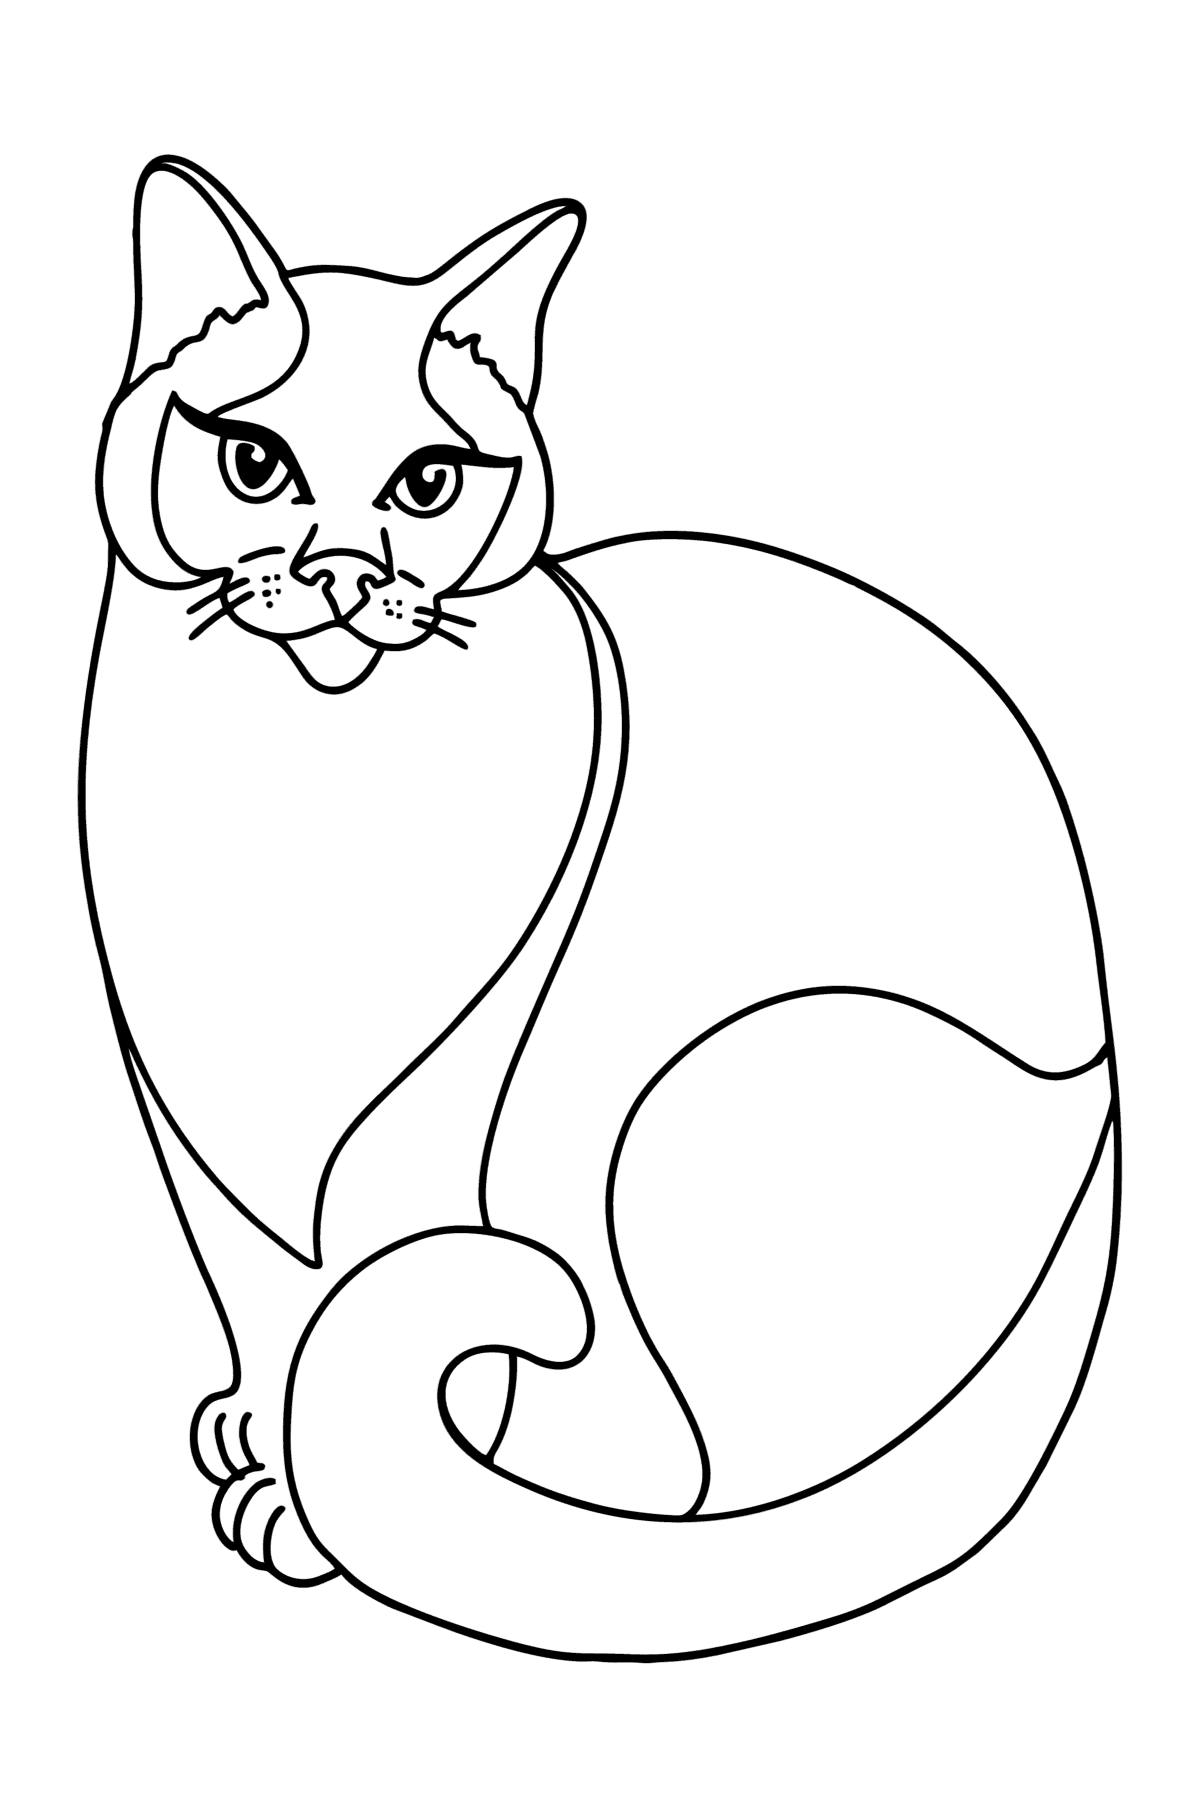 Disegno da colorare di Gatto siamese - Disegni da colorare per bambini